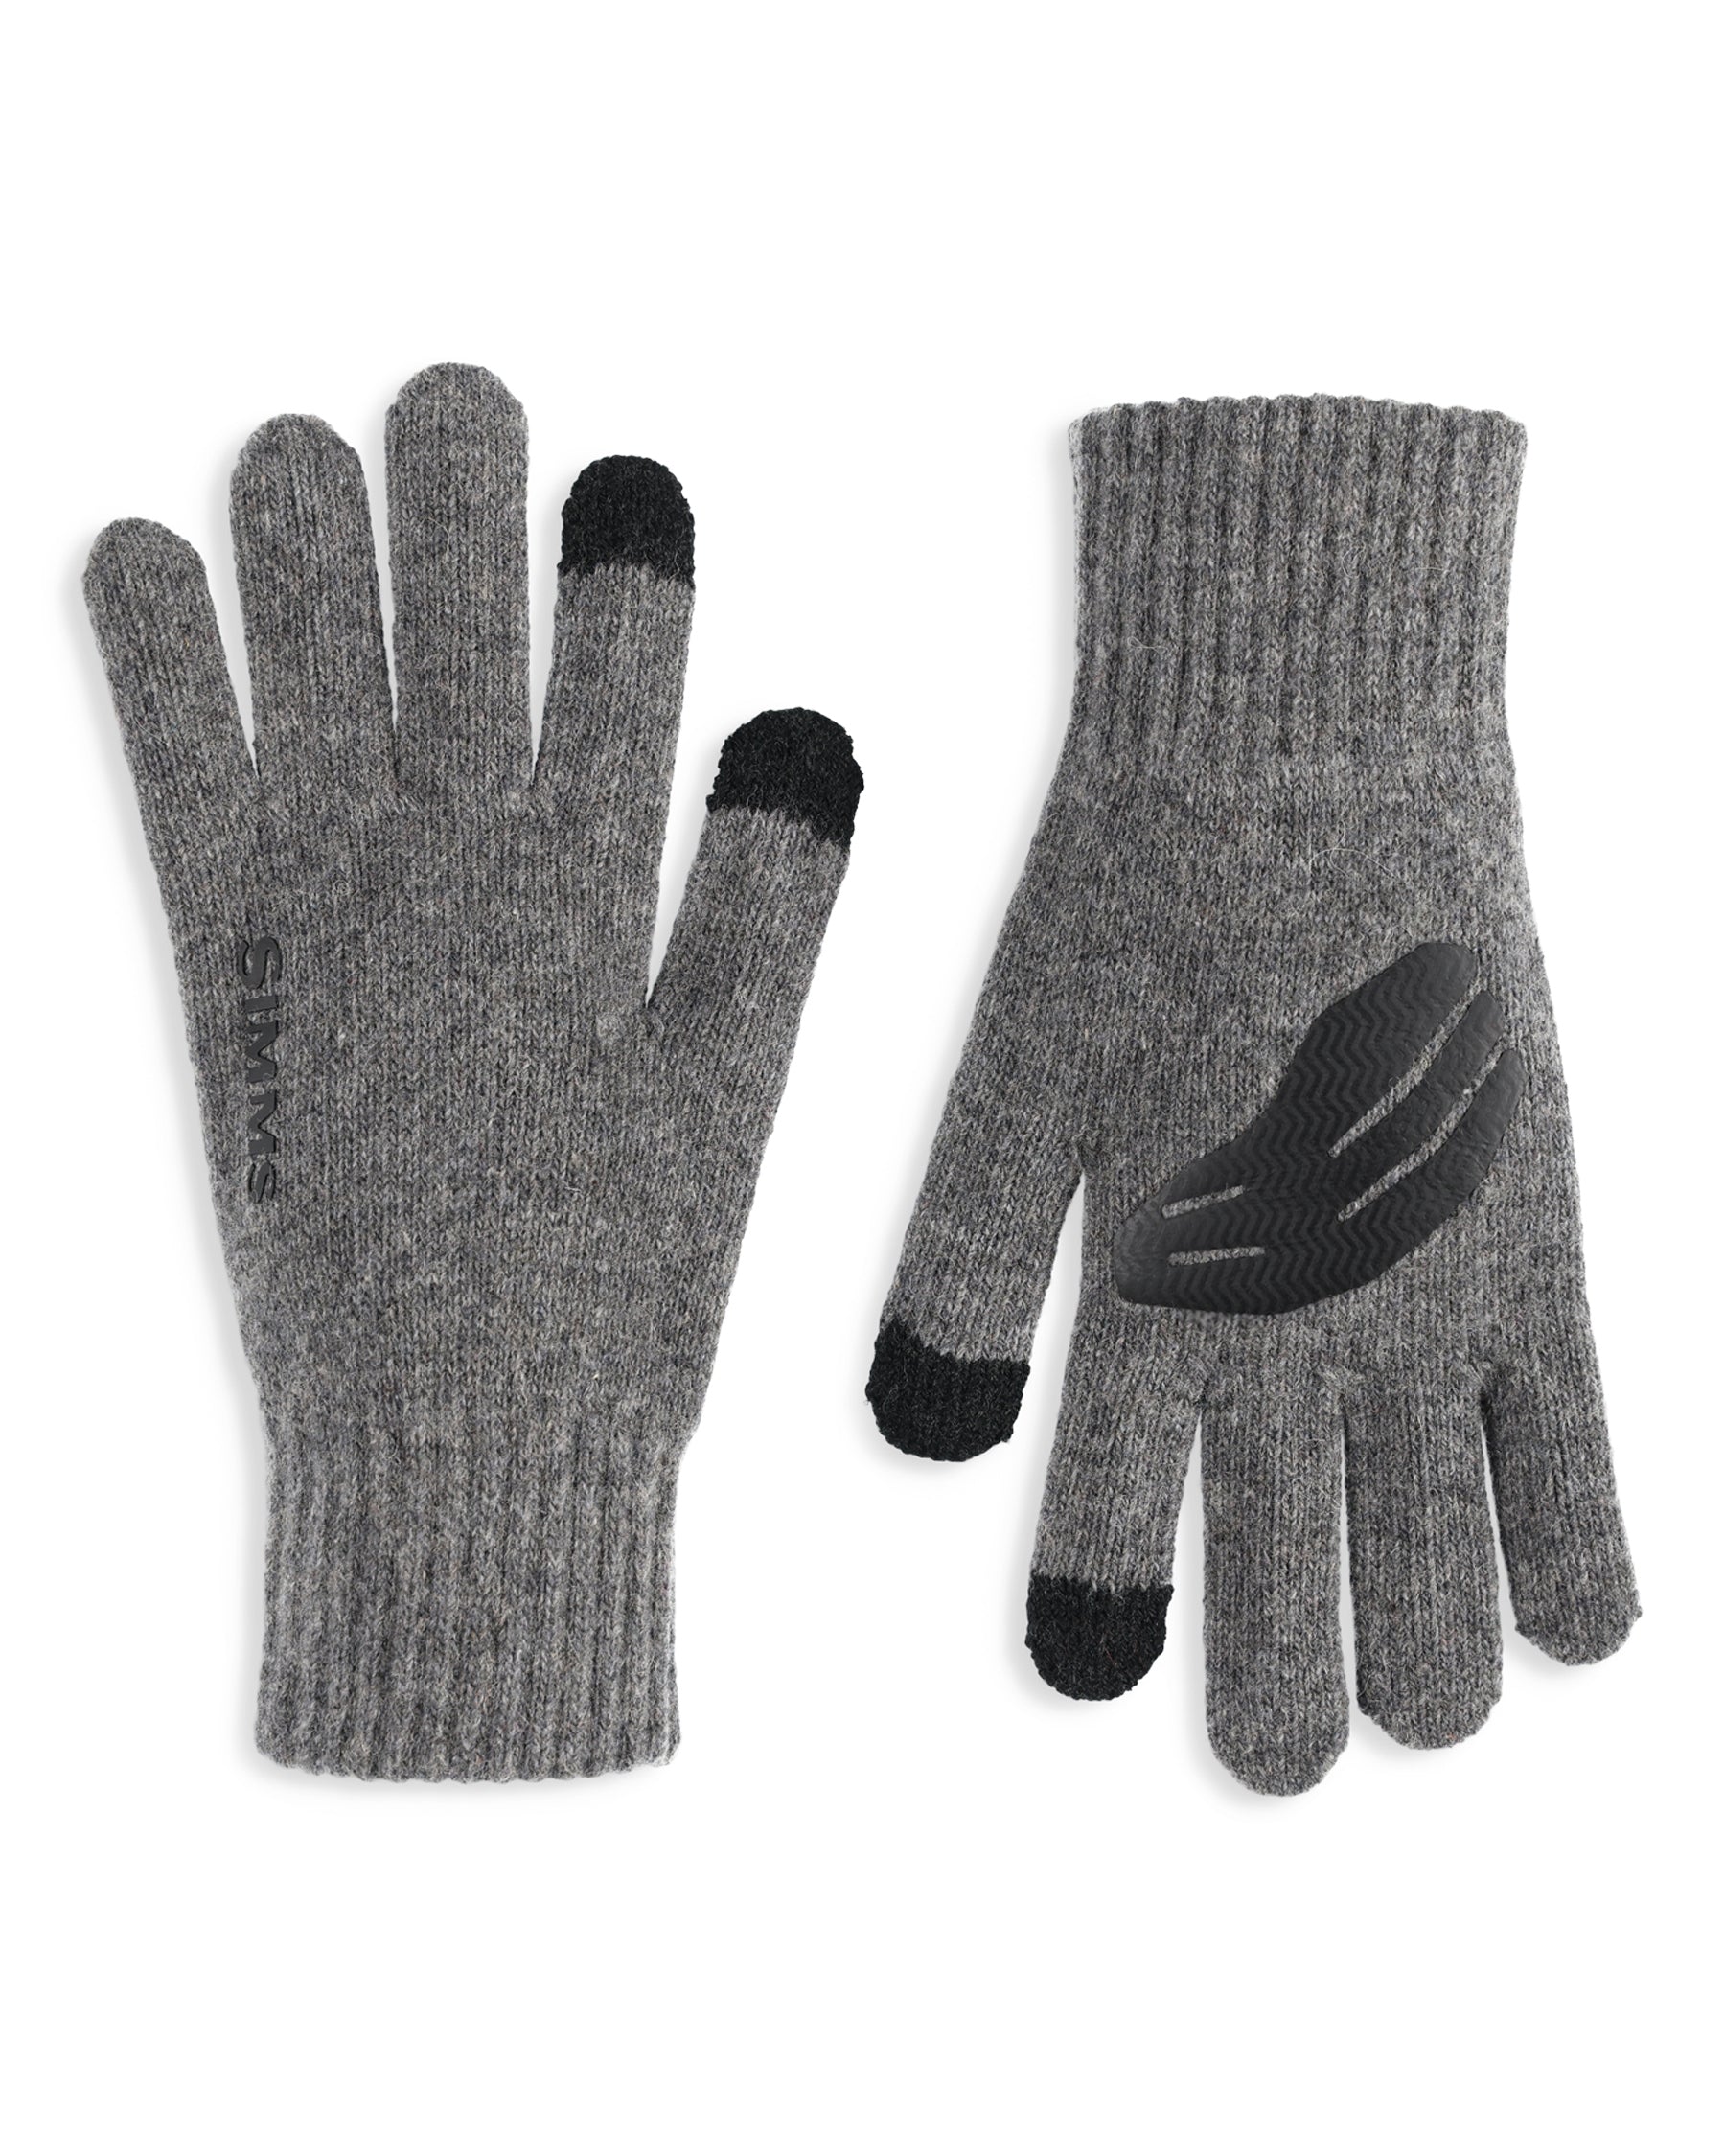 Simms Wool Full Finger Glove - S/M - Steel